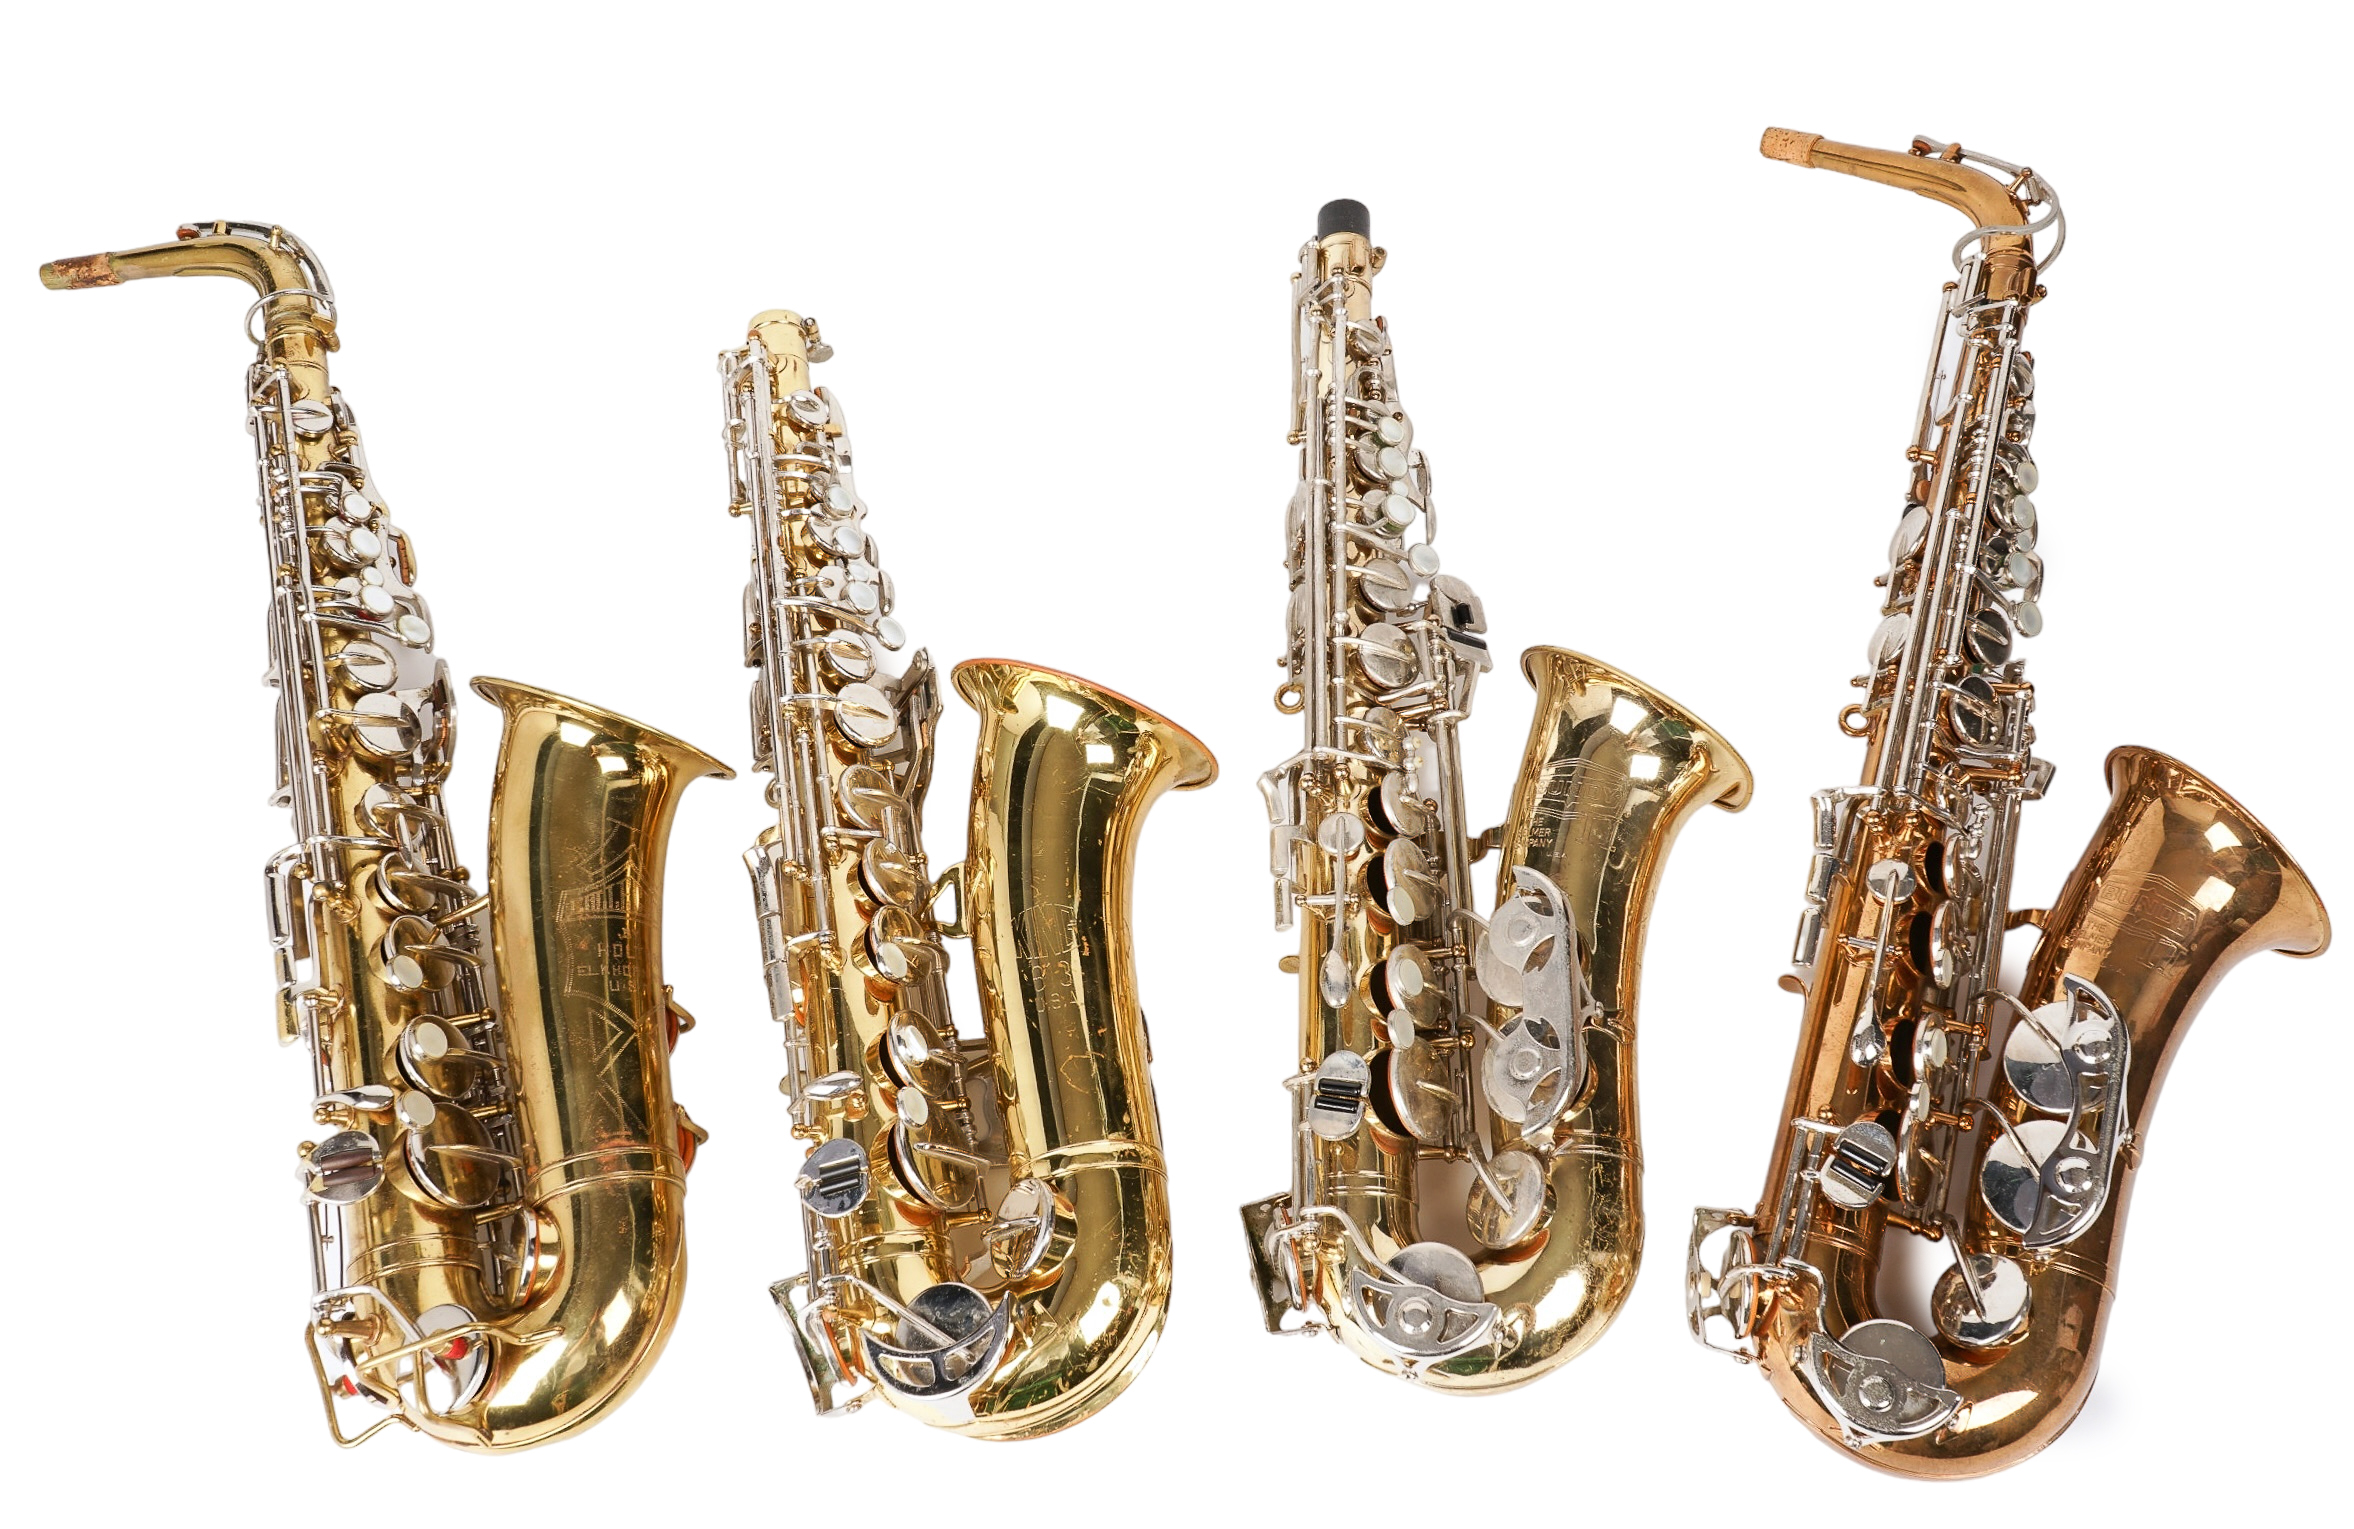  4 Alto saxophones c o Bundy 2e2291